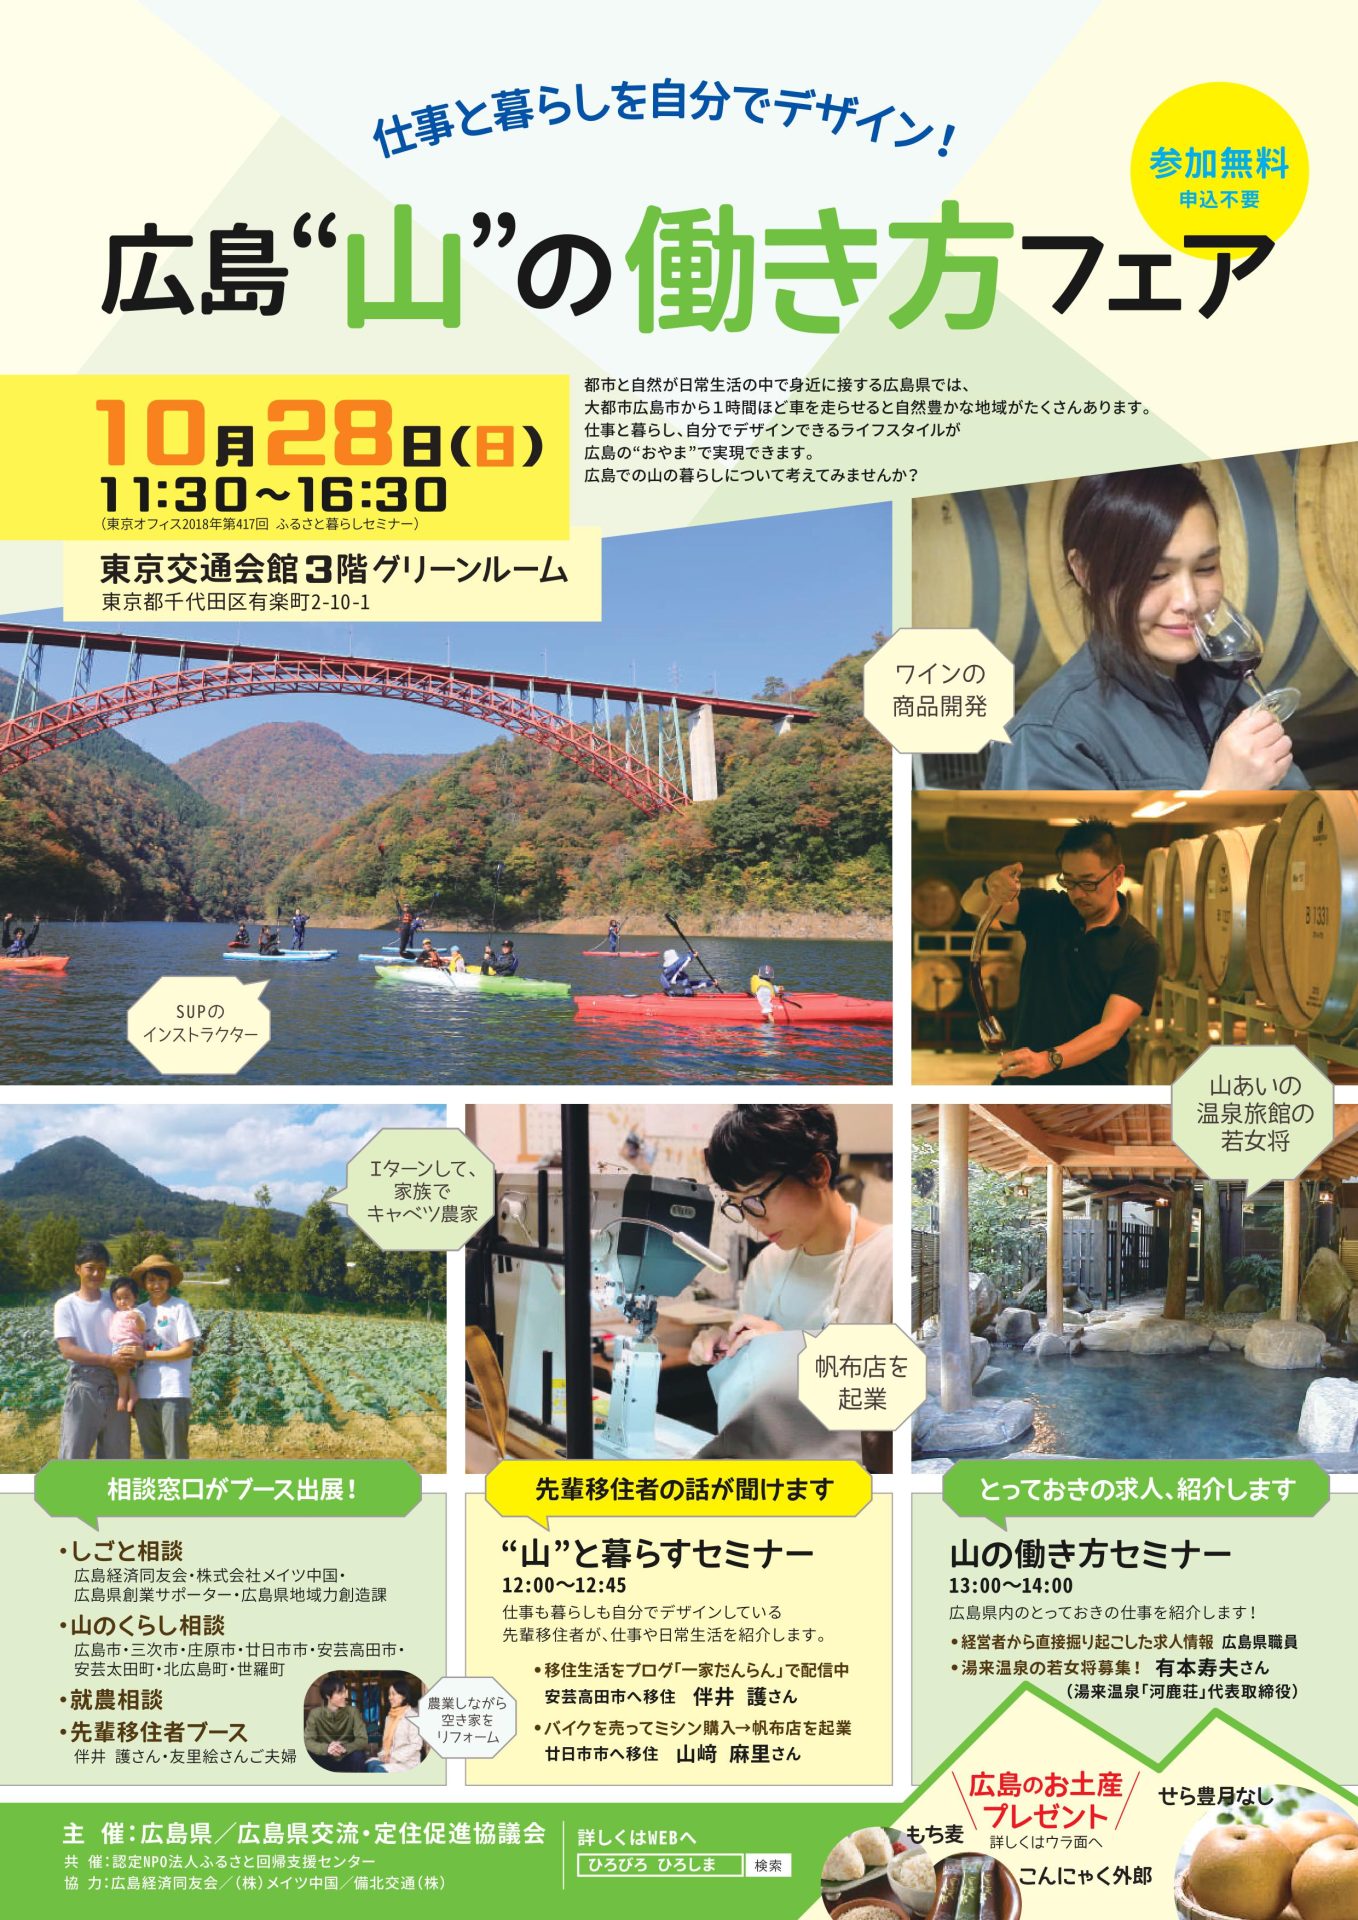 広島”山の”働き方フェア | 移住関連イベント情報